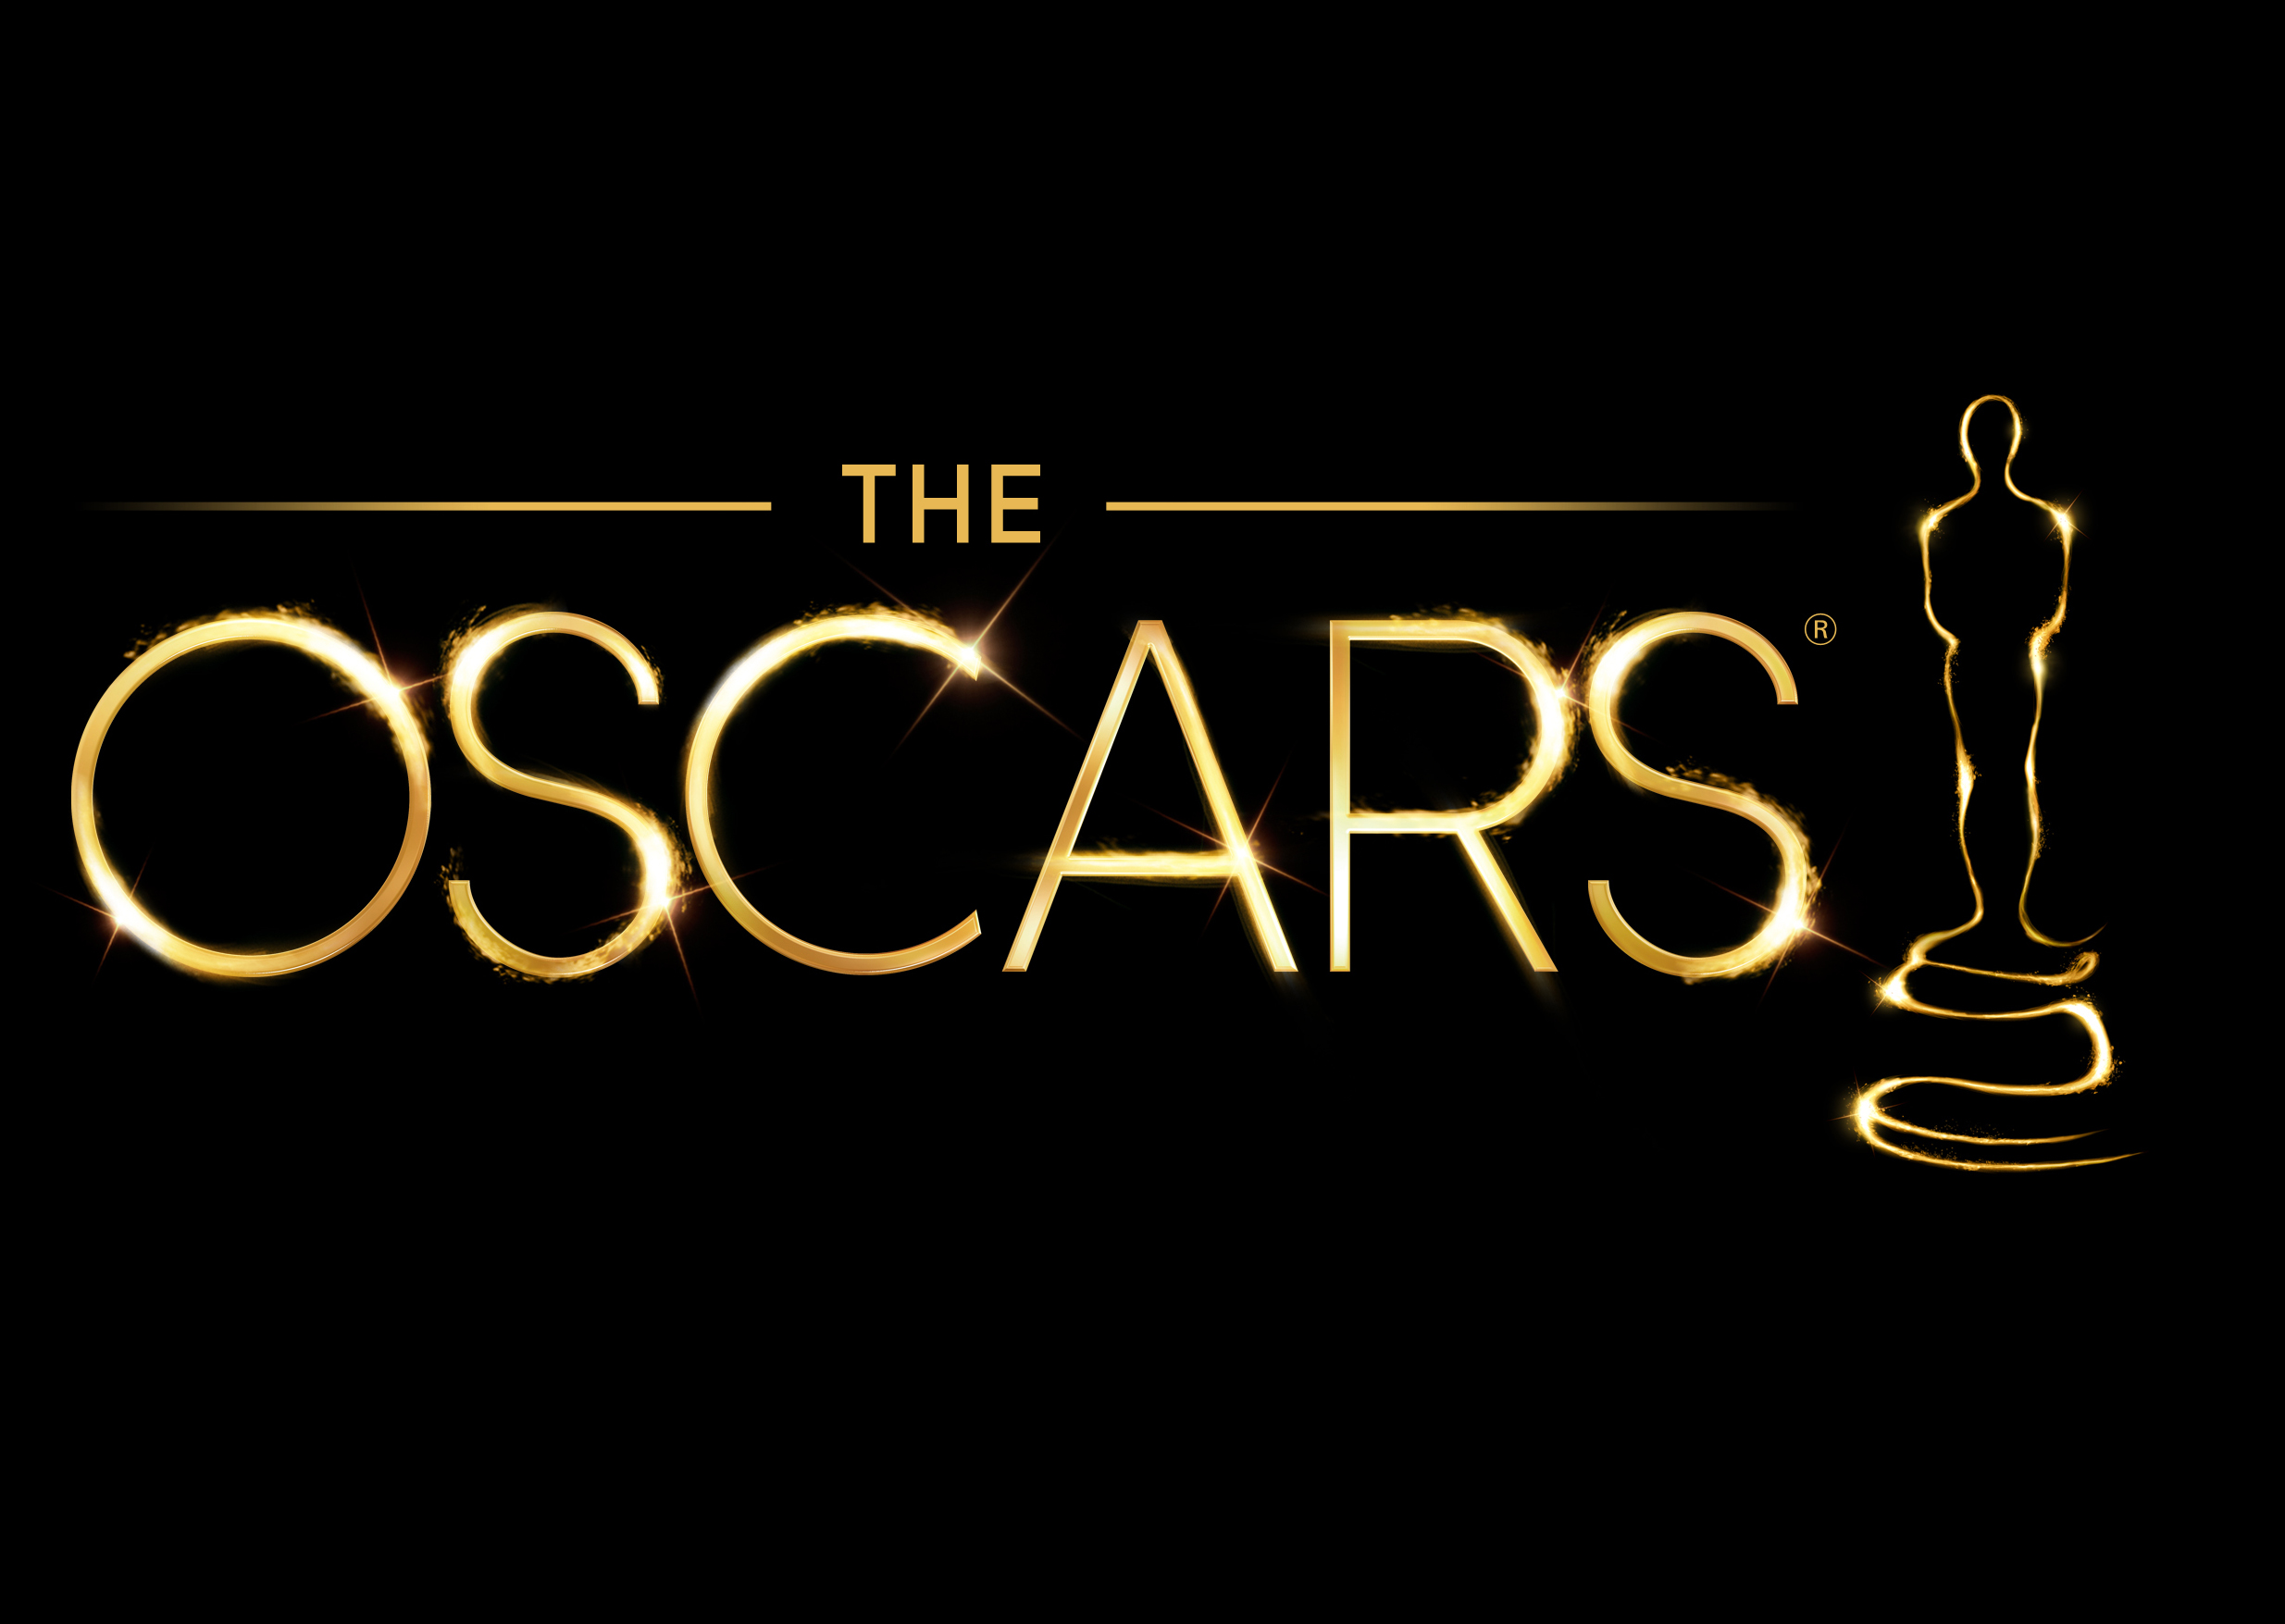 The 85th Academy Awards® will air live on Oscar® Sunday, February 24, 2013